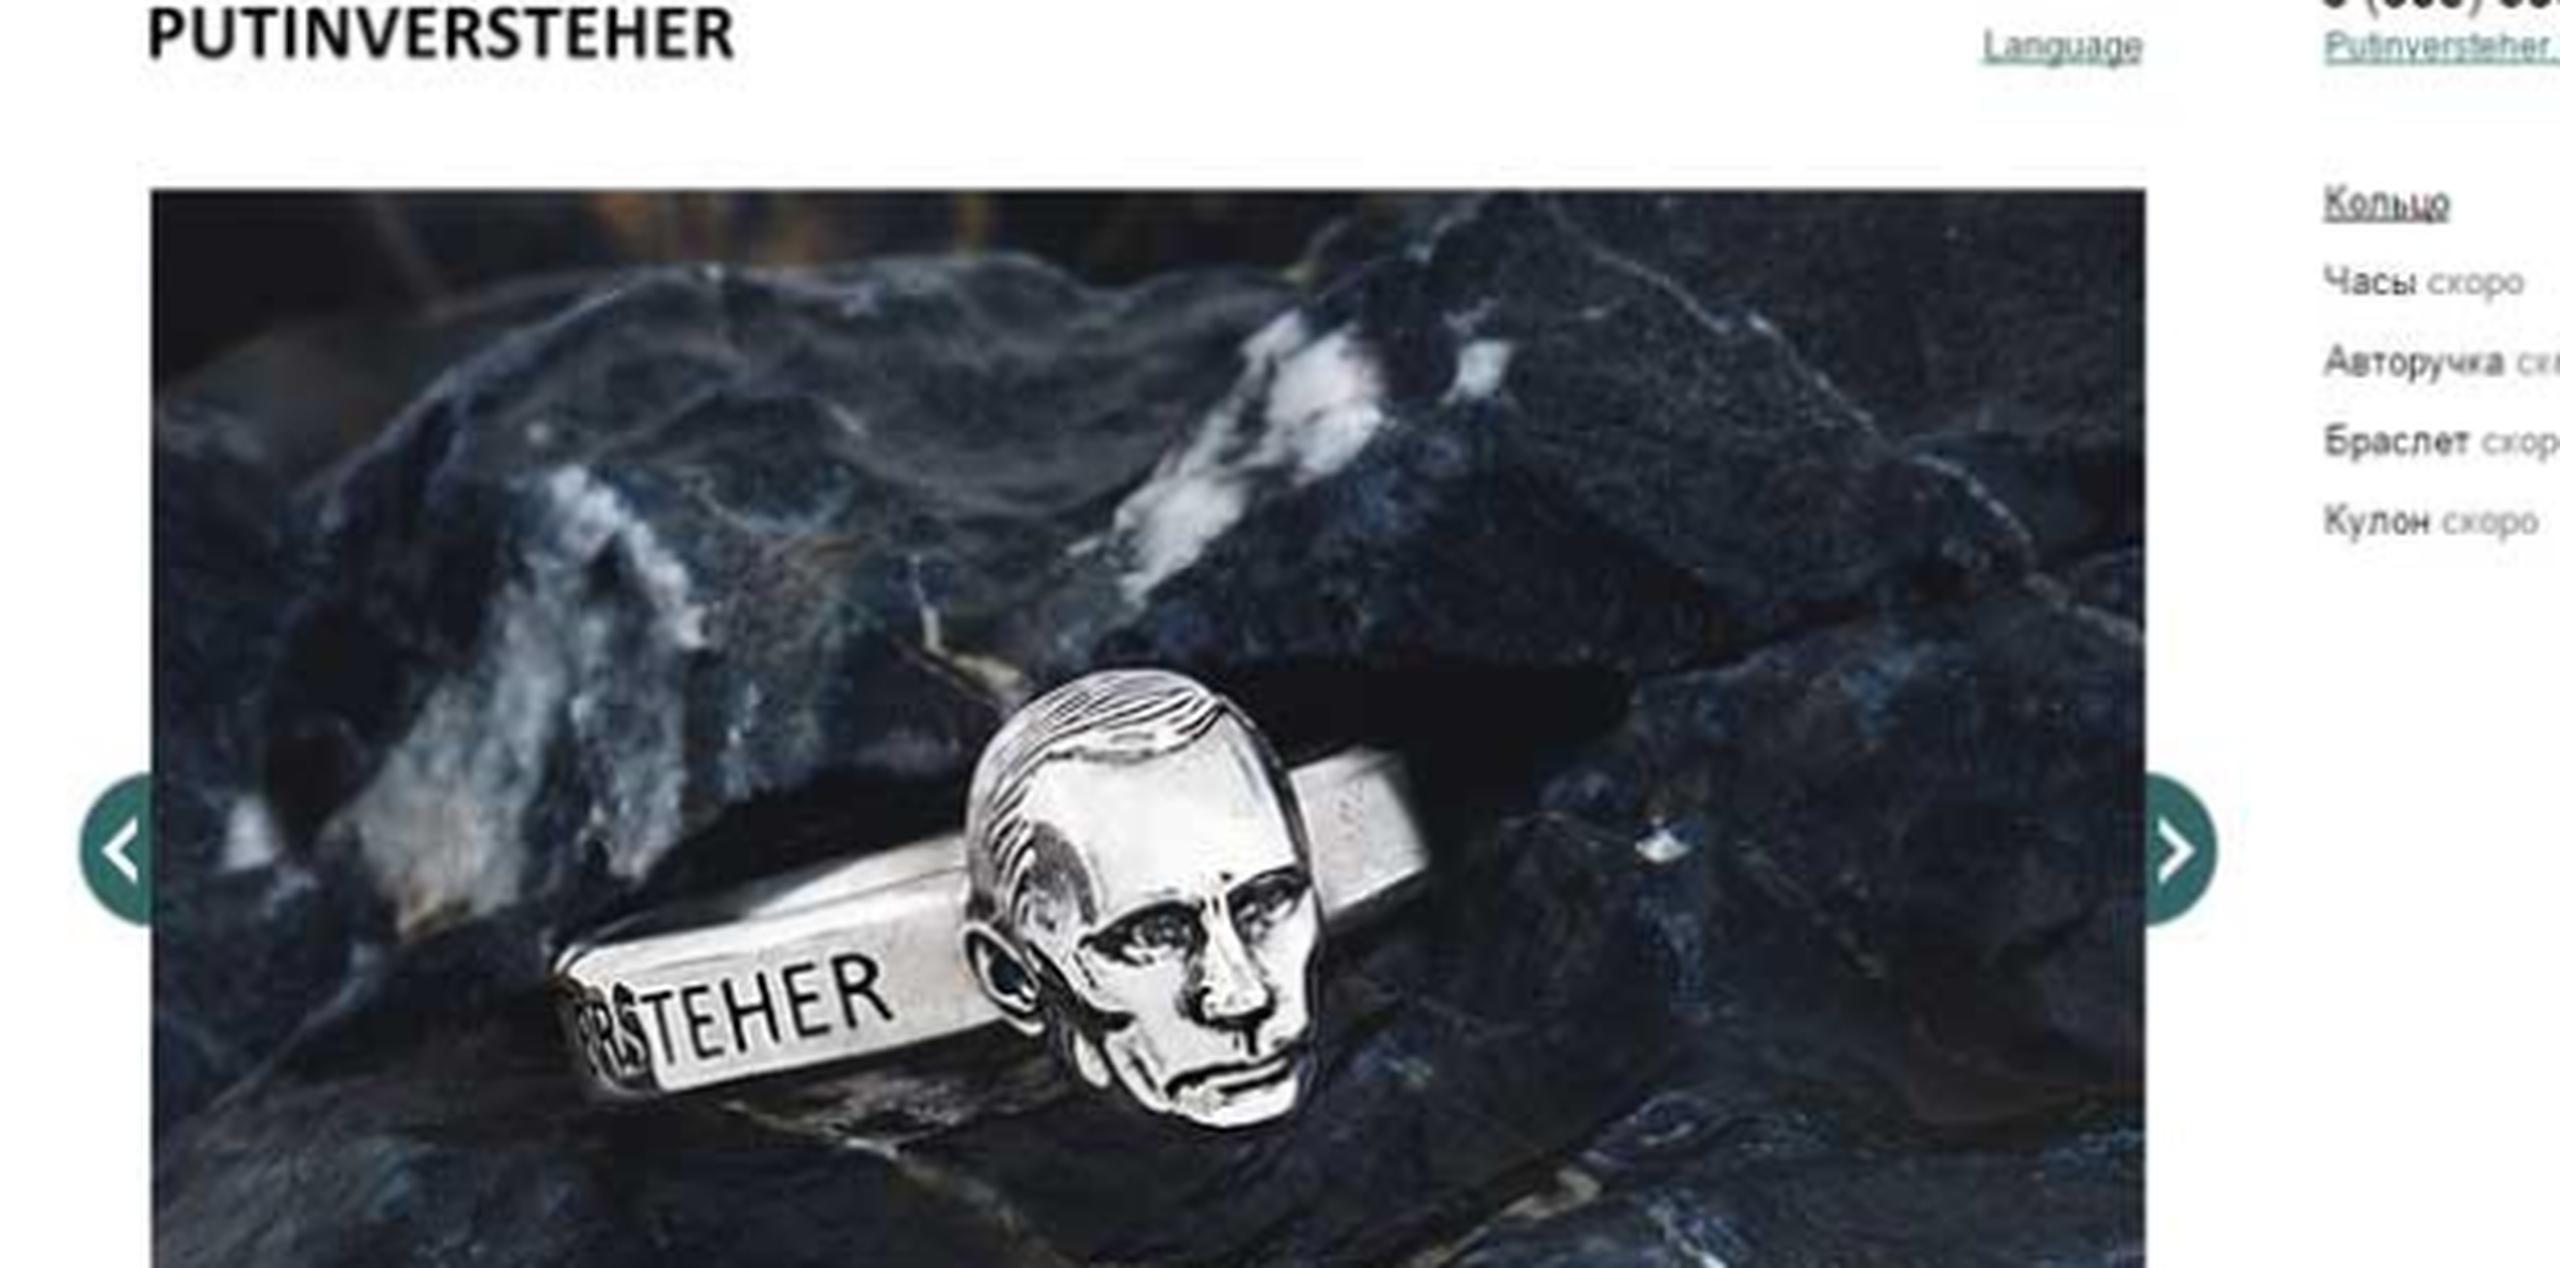 El anillo de plata, que cuesta 7.500 rublos (poco más de 100 euros al cambio actual) y apenas pesa 10 gramos, muestra a un Putin petrificado y desafiante. (http://putinversteher.ru/)